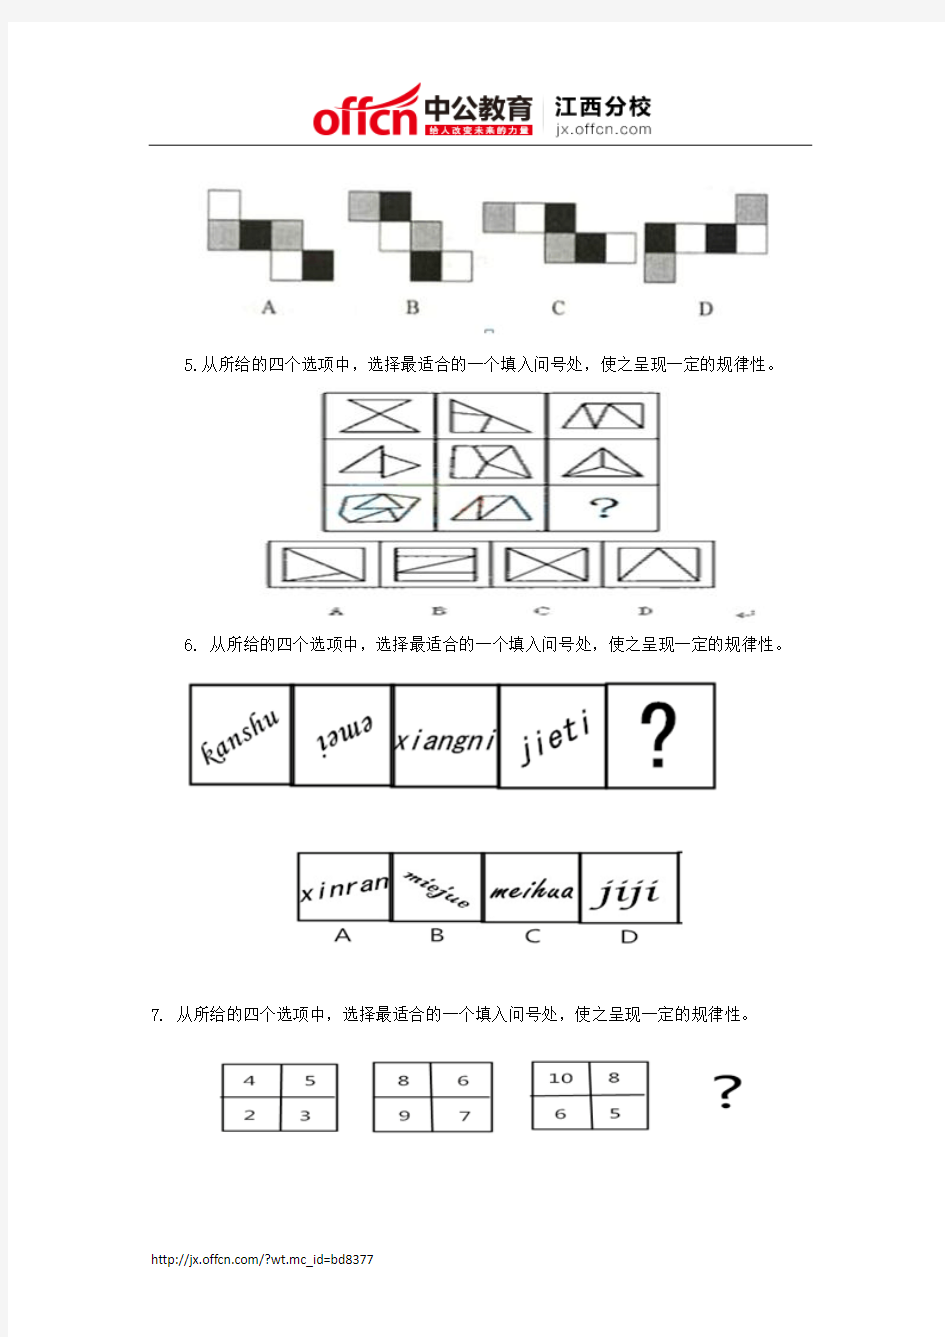 2015江西大学生村官考试行测备考：12道题测测你的推理能力